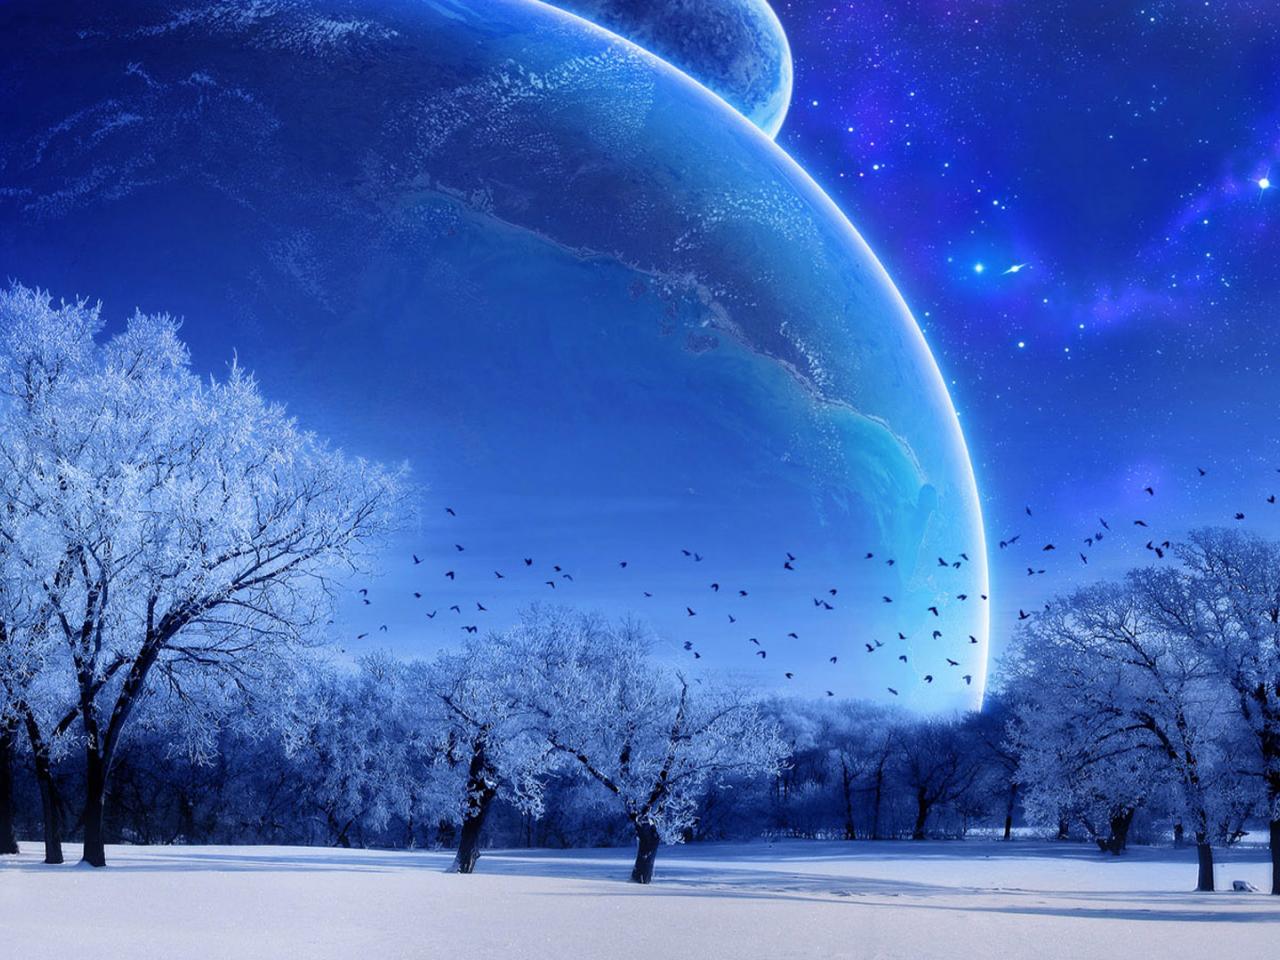 обои Зима на фоне планет фото